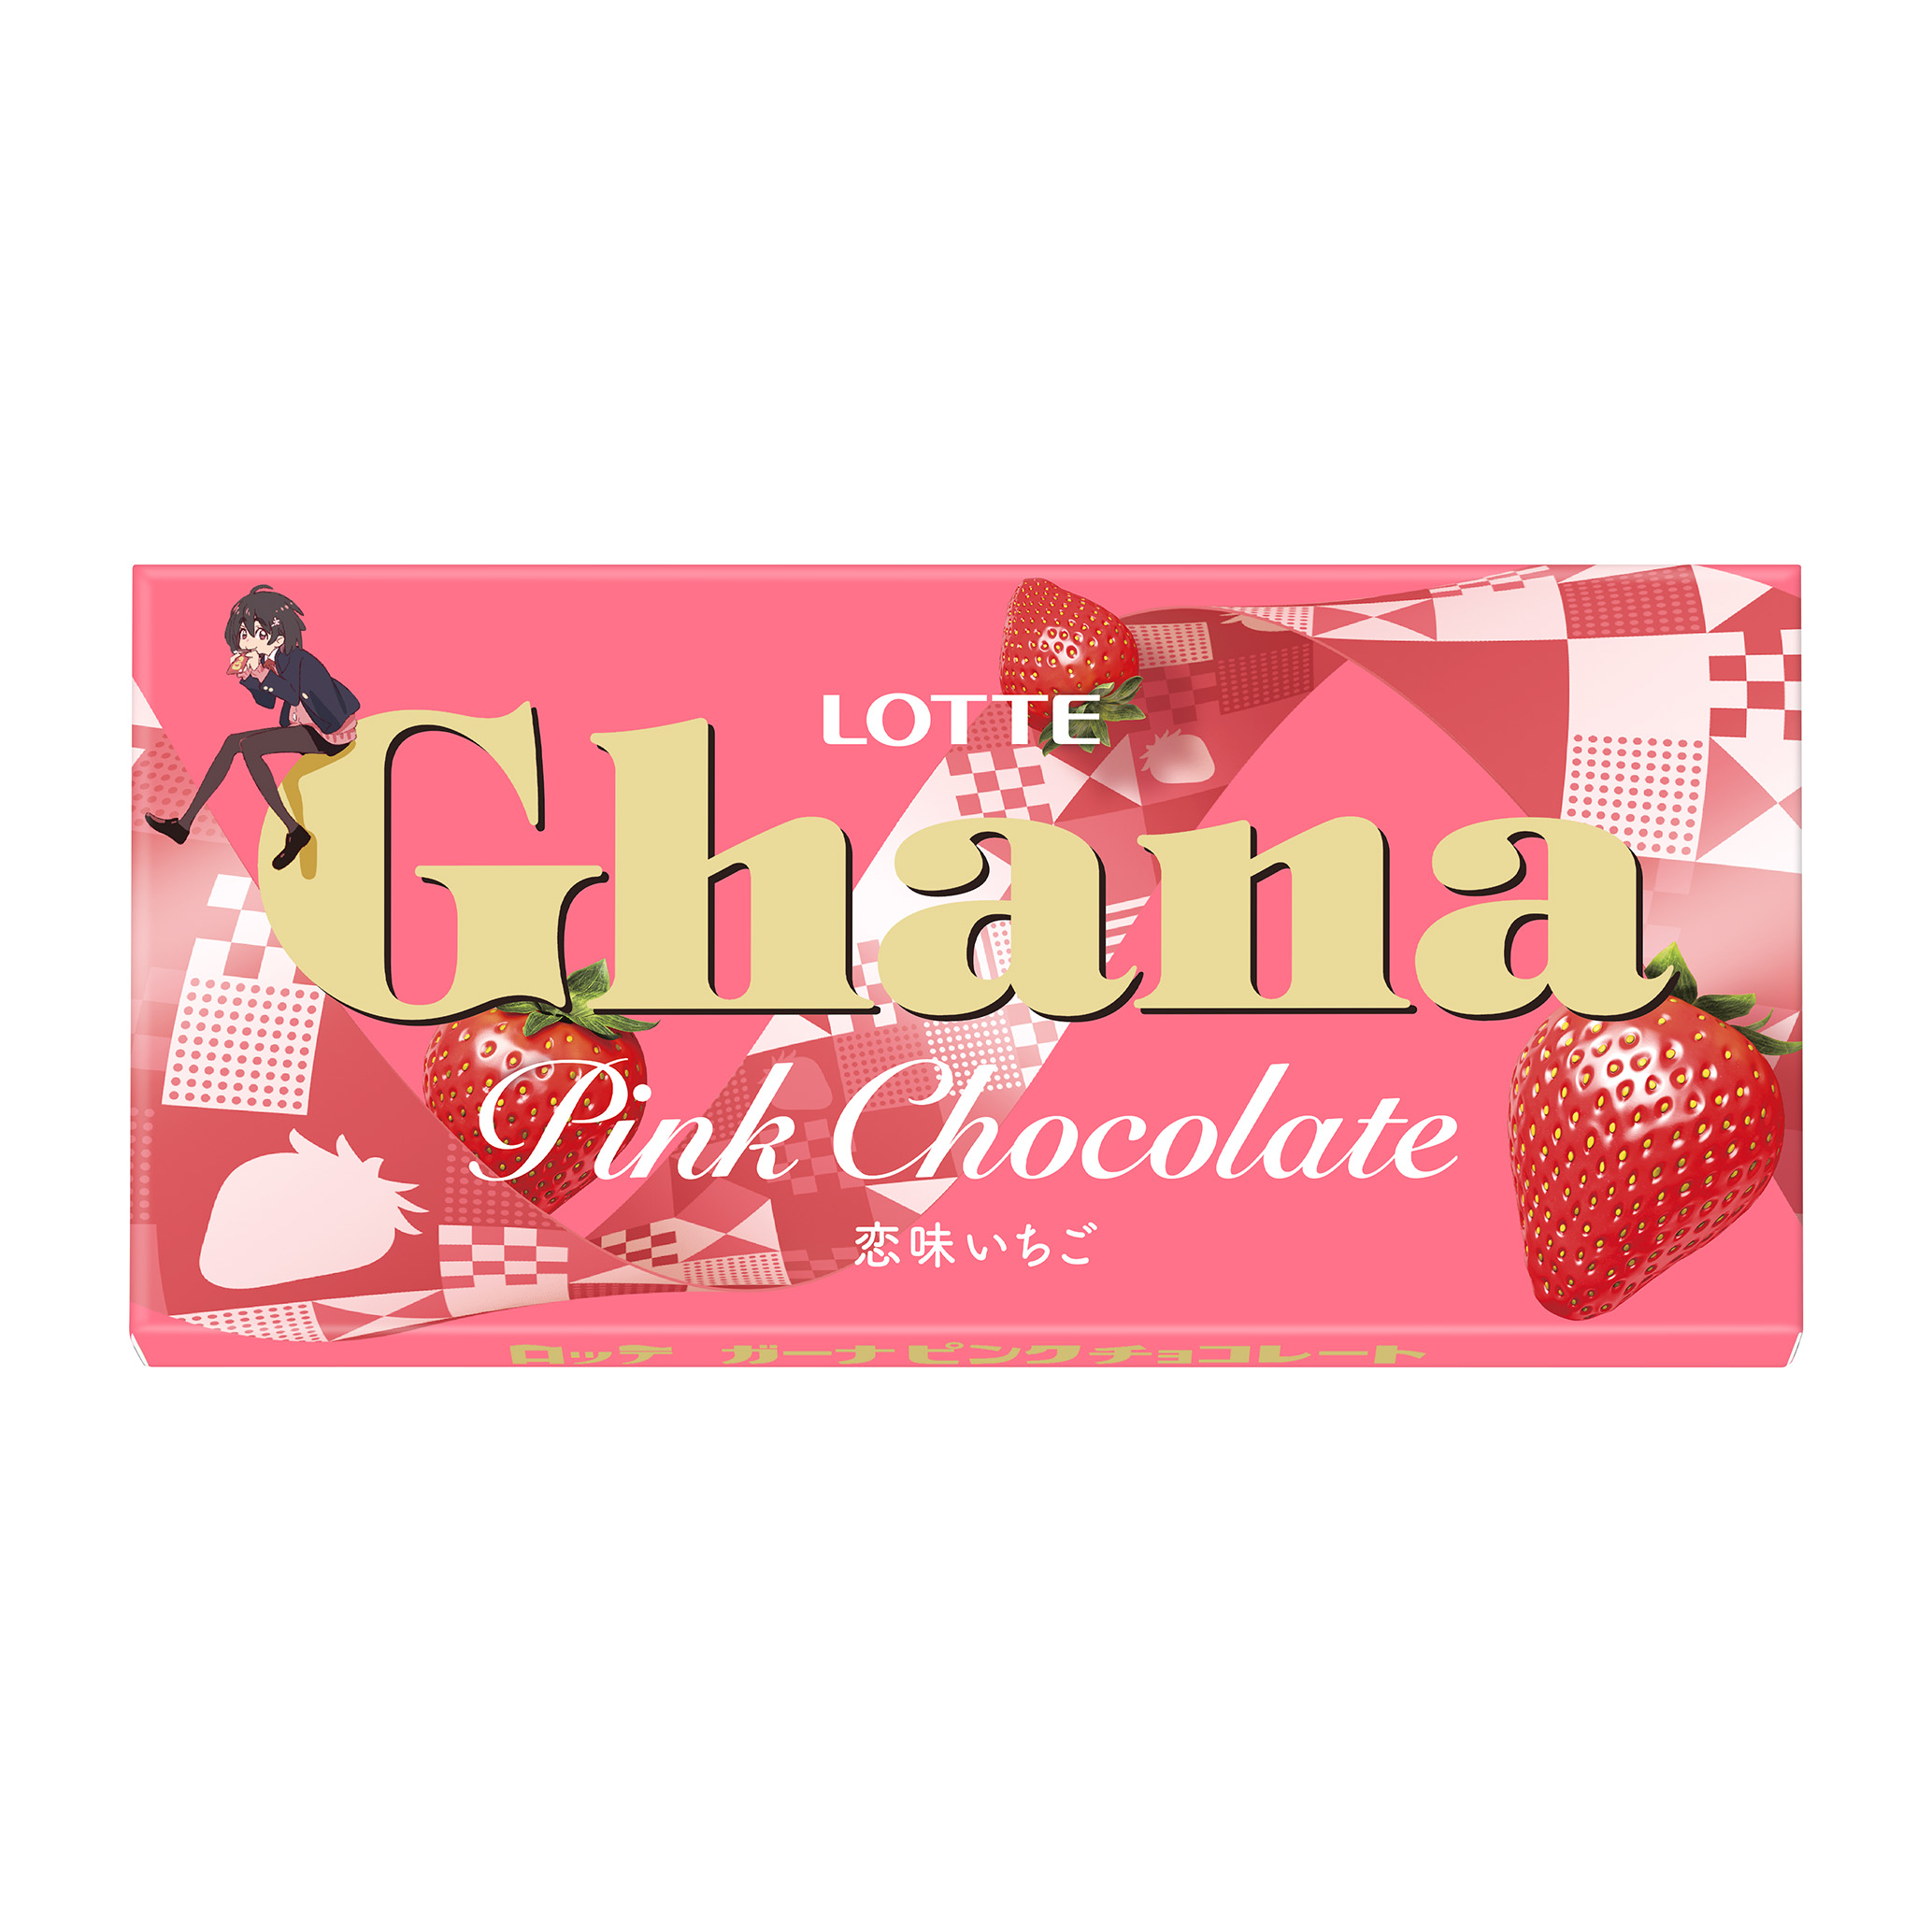 ピンクカラーでバレンタインを可愛く演出 ガーナの板チョコレートでは初めてとなるいちご味の商品 ガーナ ピンクチョコレート を全国で発売いたします 株式会社ロッテのプレスリリース